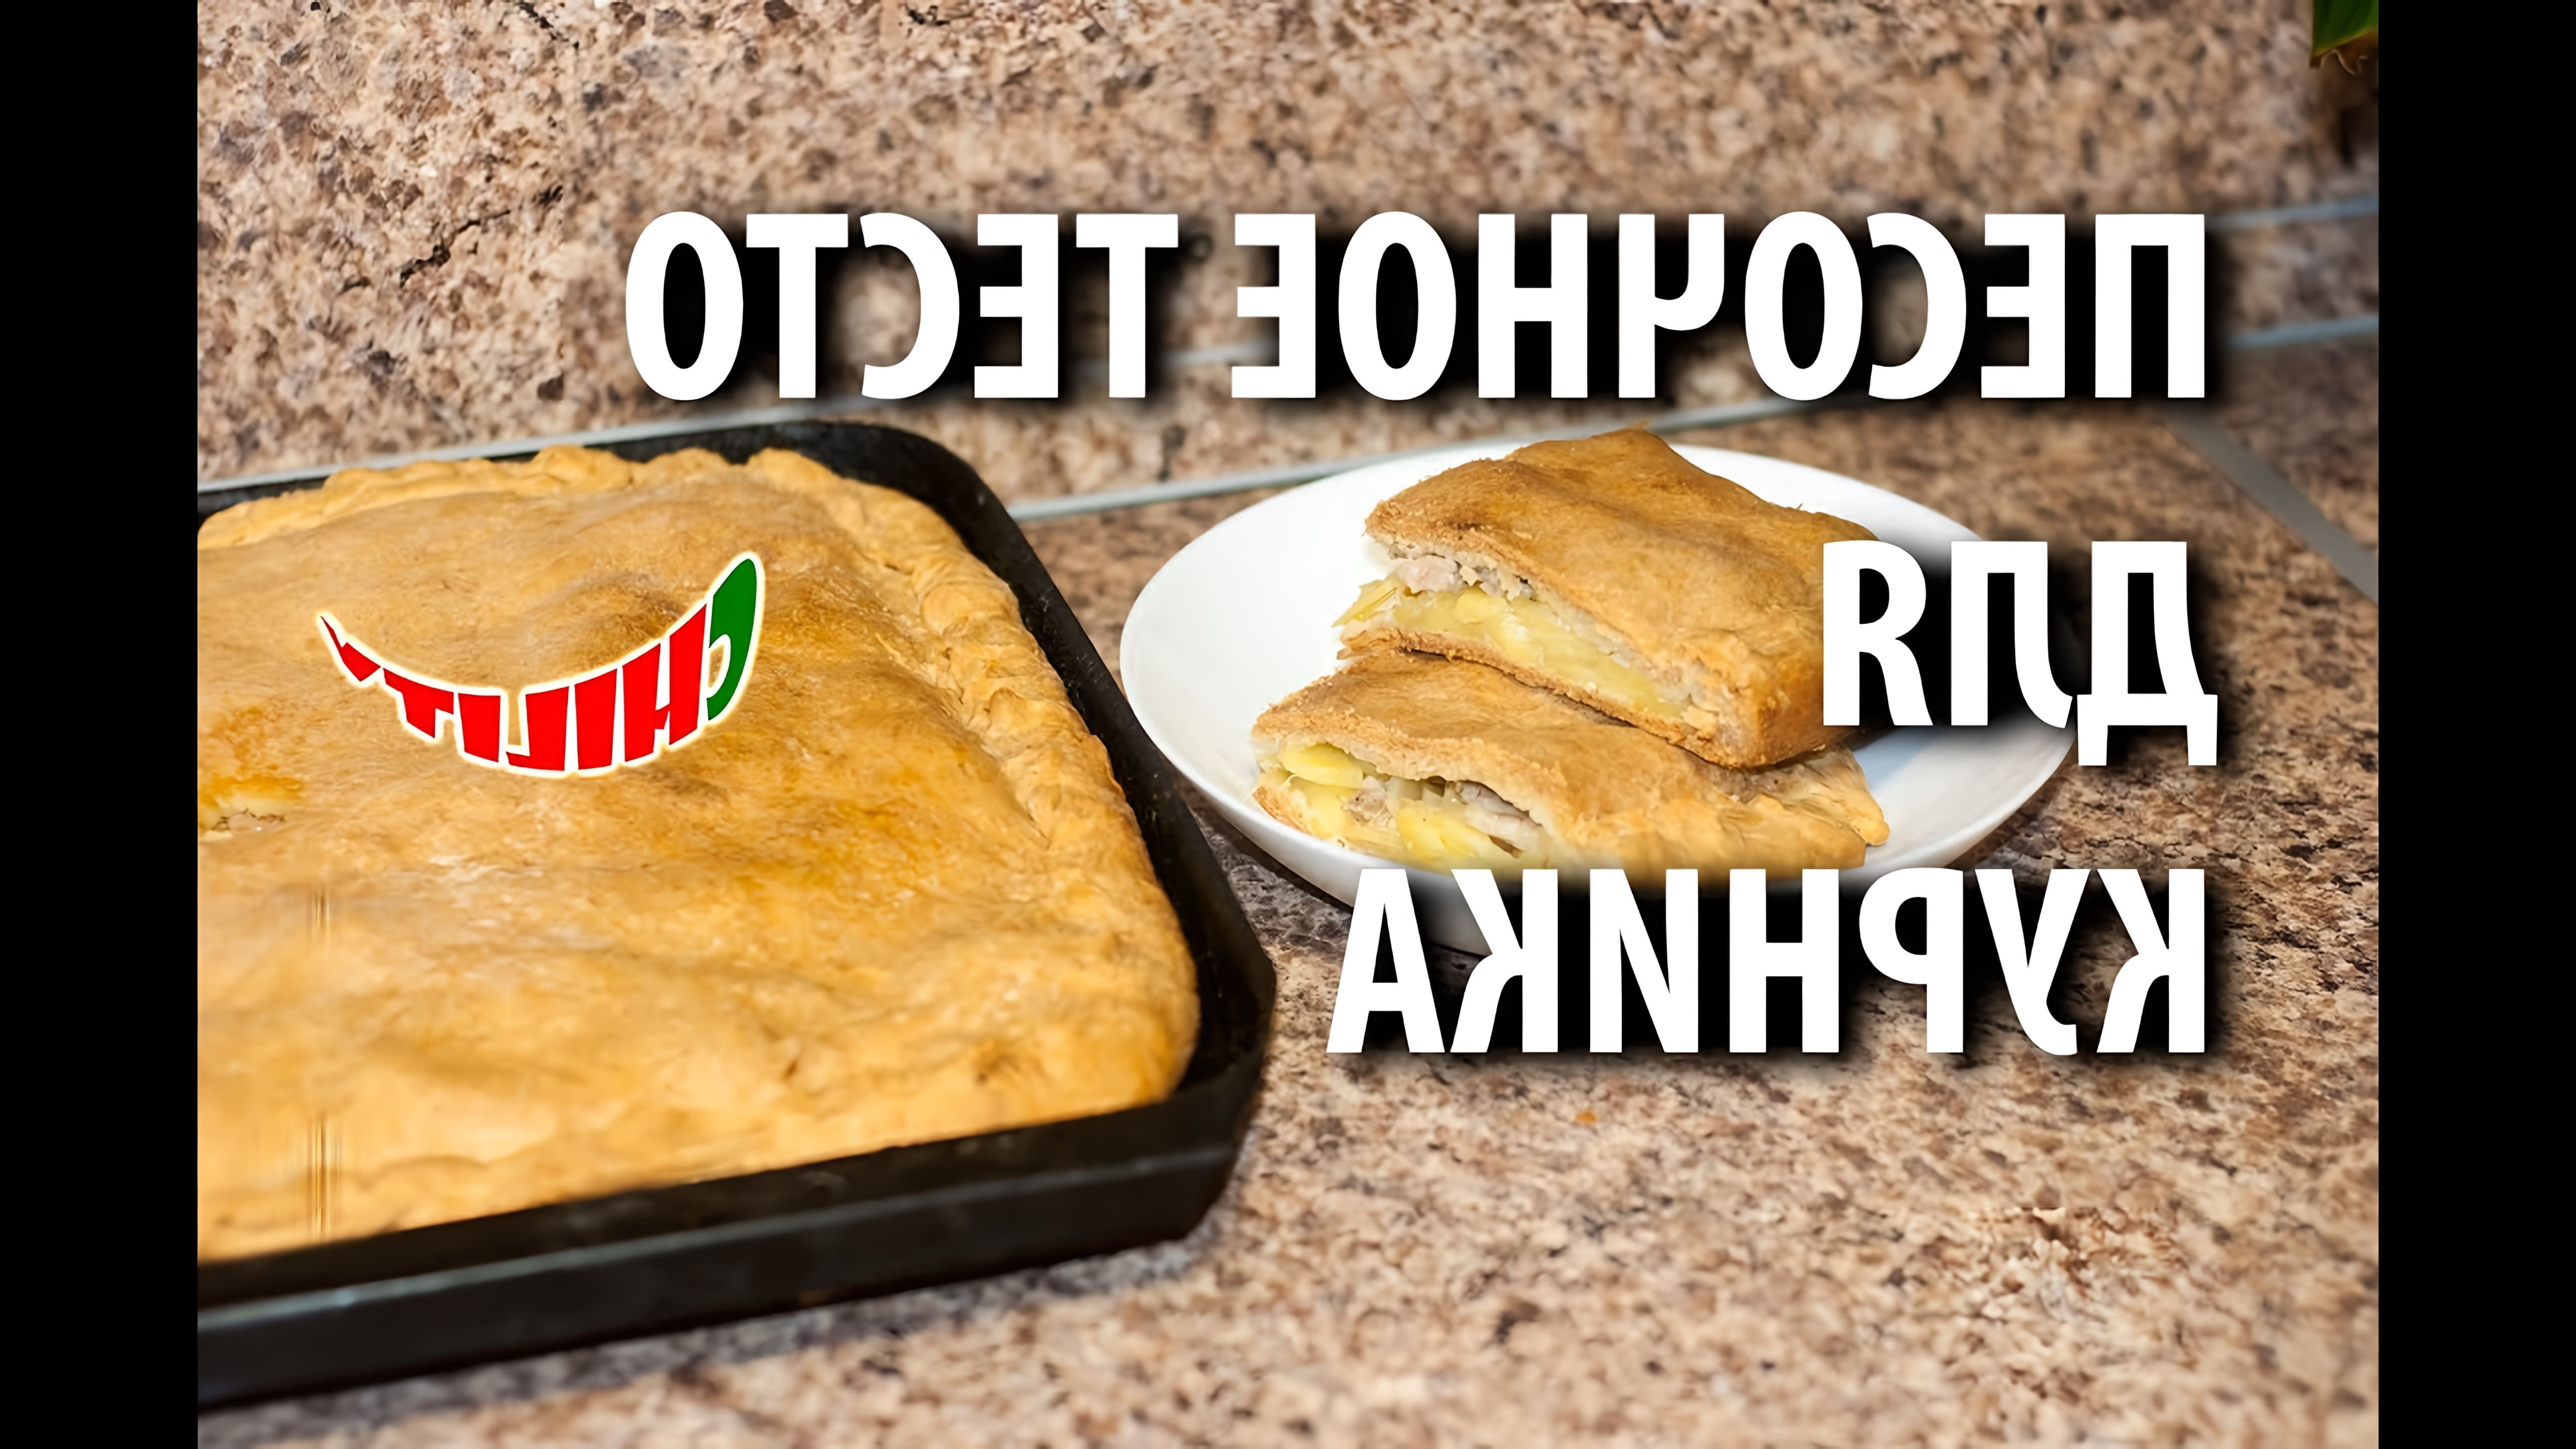 Видео рецепт приготовления курника, русской выпечки, наполненной мясом и картофелем